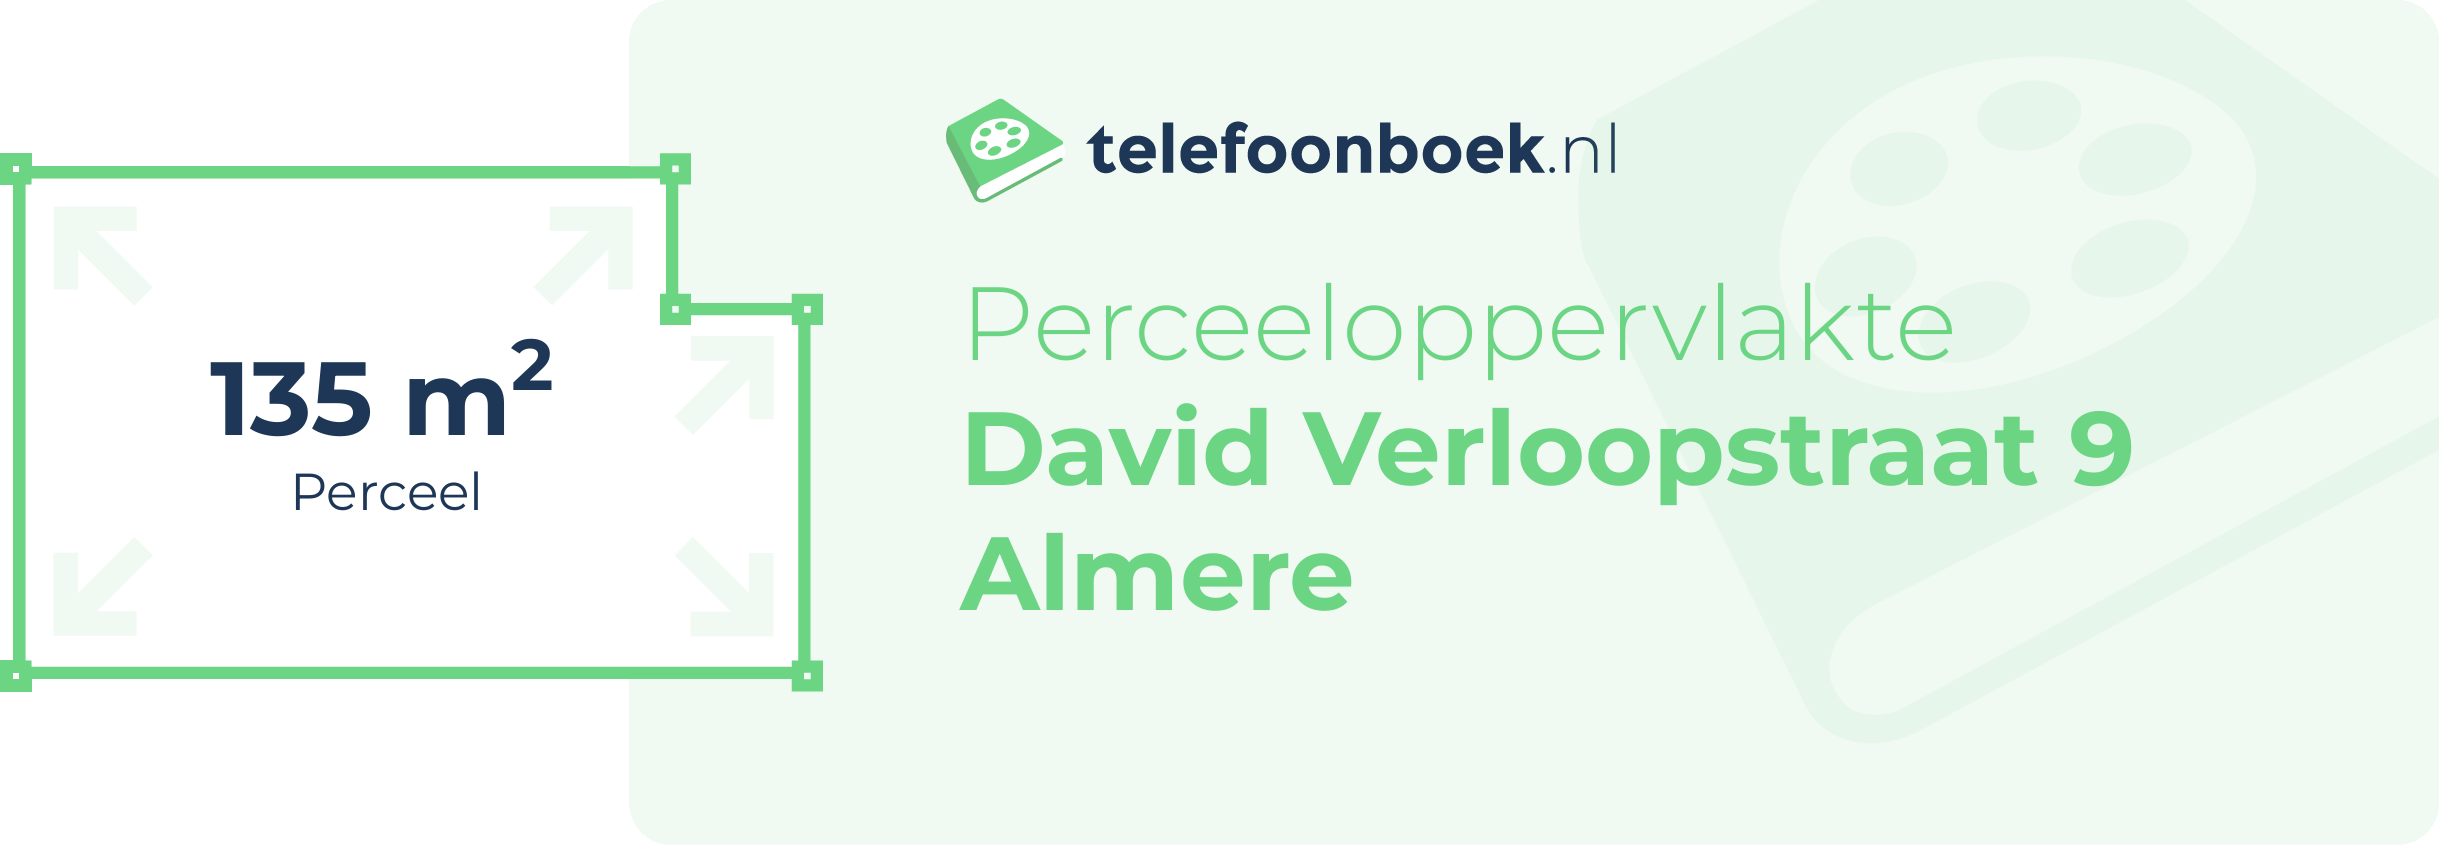 Perceeloppervlakte David Verloopstraat 9 Almere